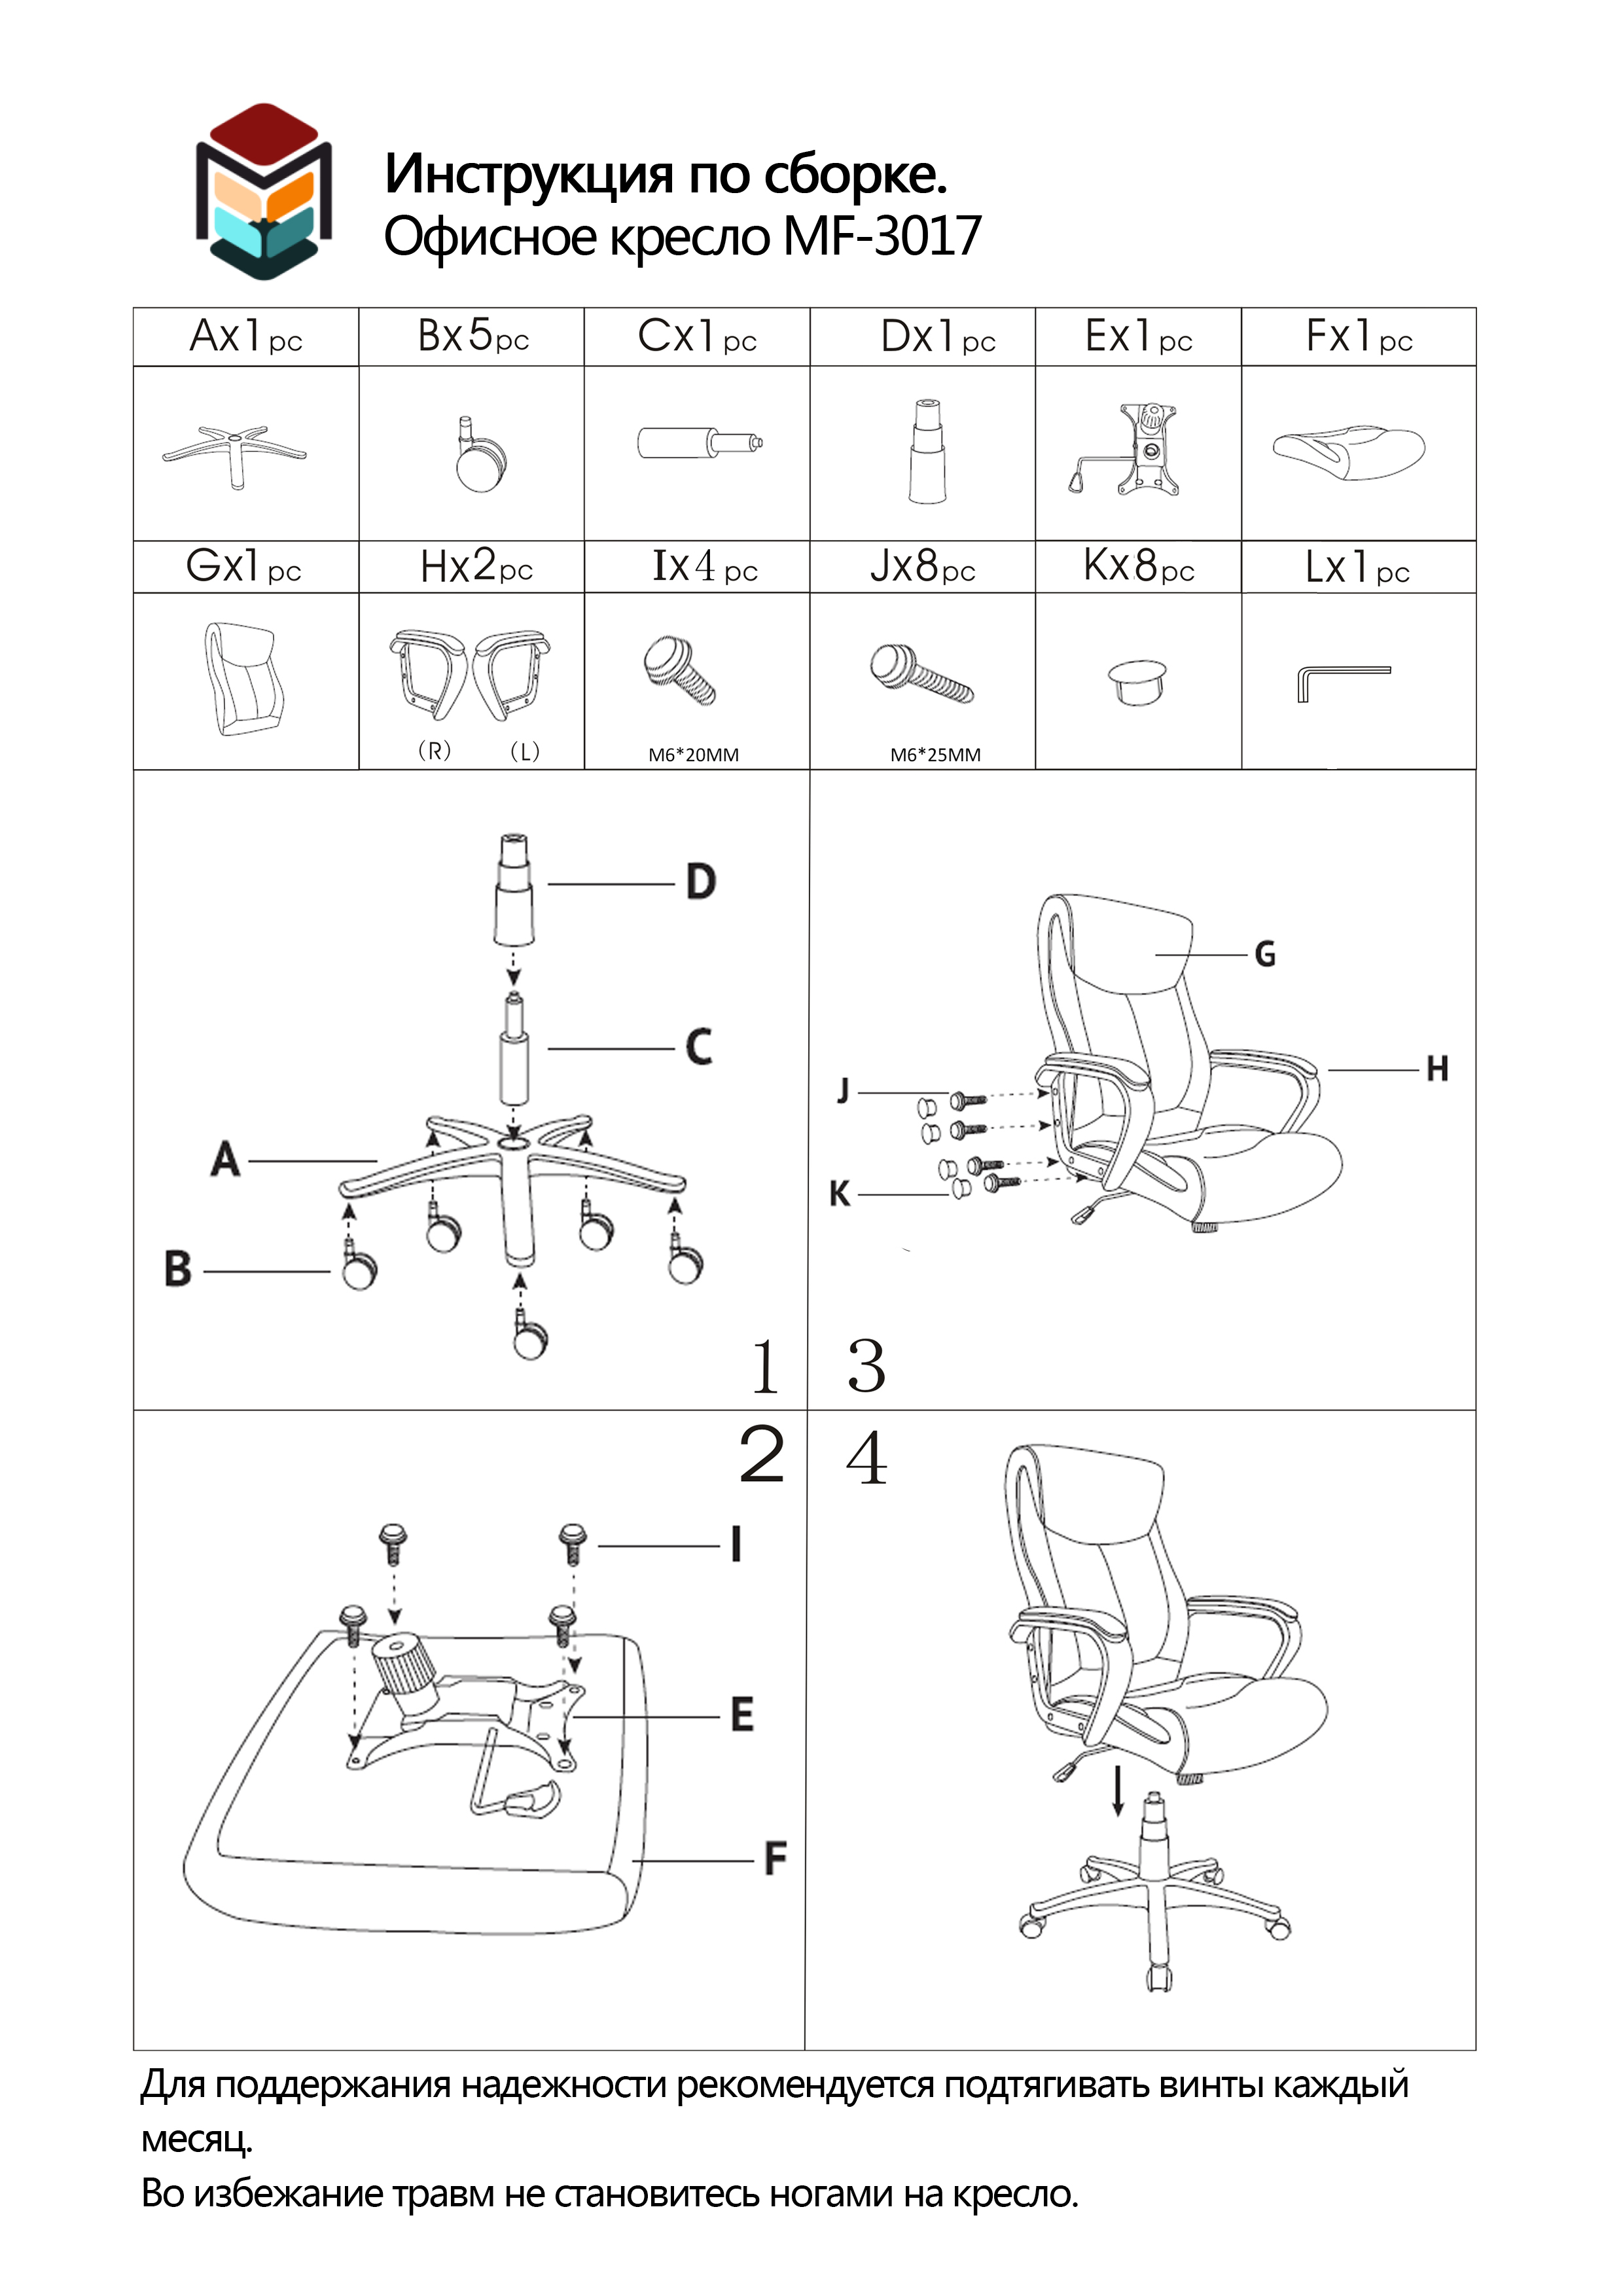 Устройство офисного кресла. Схема сборки офисного кресла с газлифтом. ANIMORE офисное кресло схема сборки. Схема сборки офисного кресла Martela. Схема сборки офисного кресла su-ck130-8.